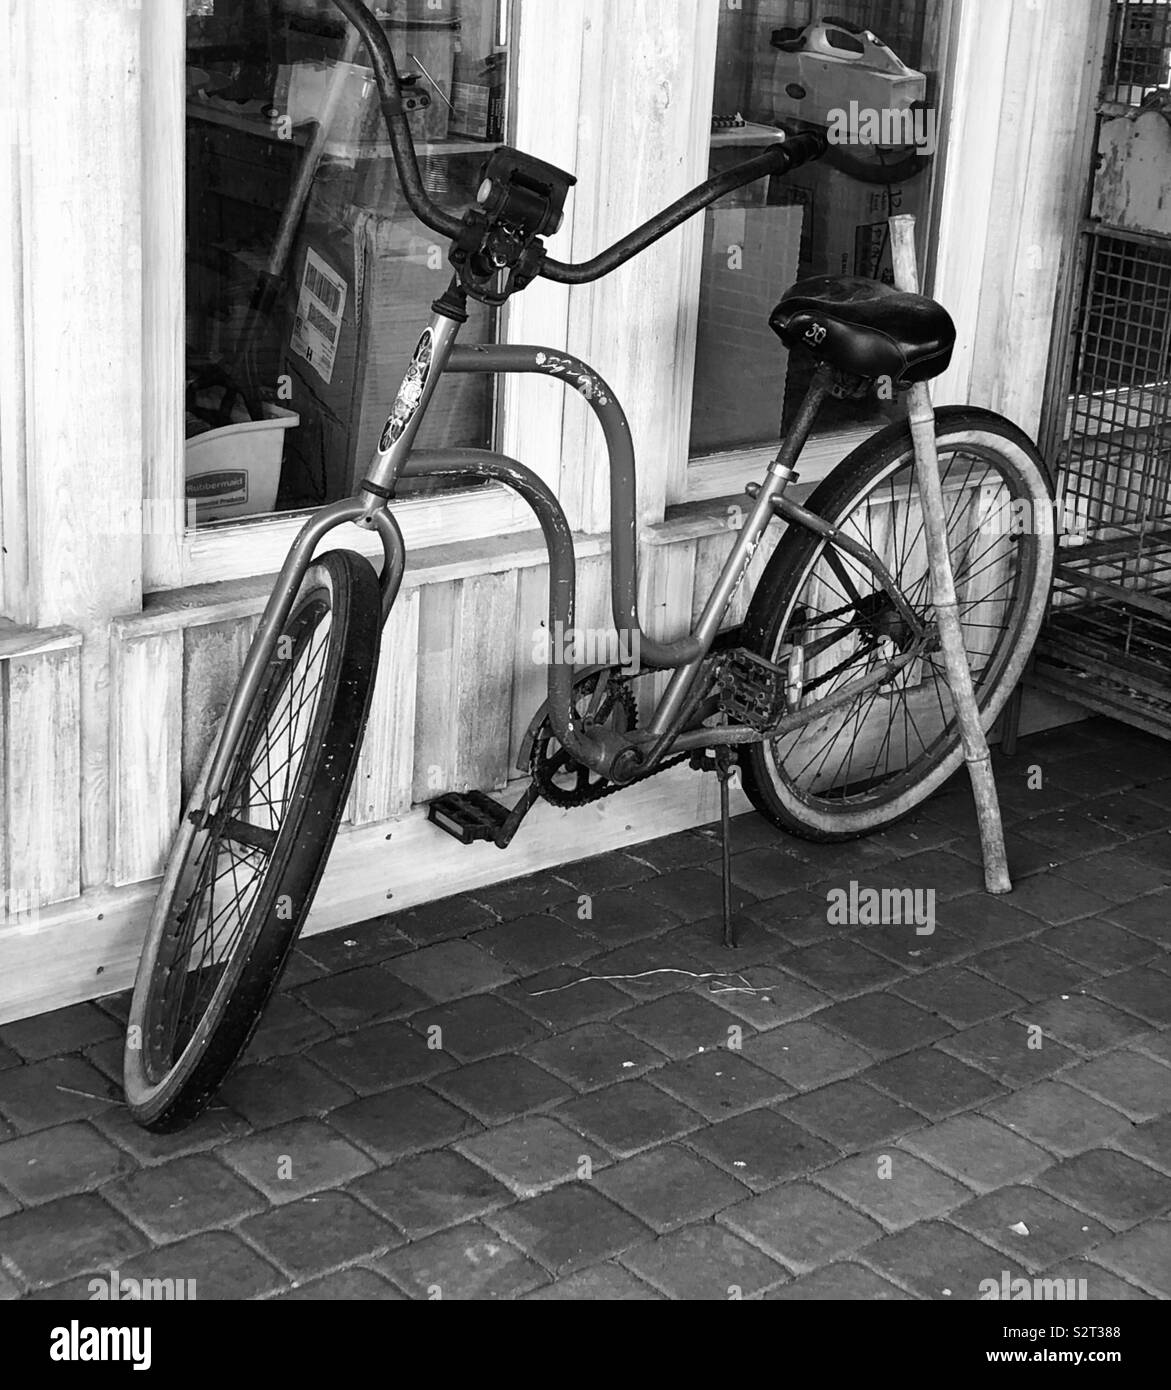 In bianco e nero di vecchi beach cruiser bicicletta parcheggiata fuori del negozio Foto Stock